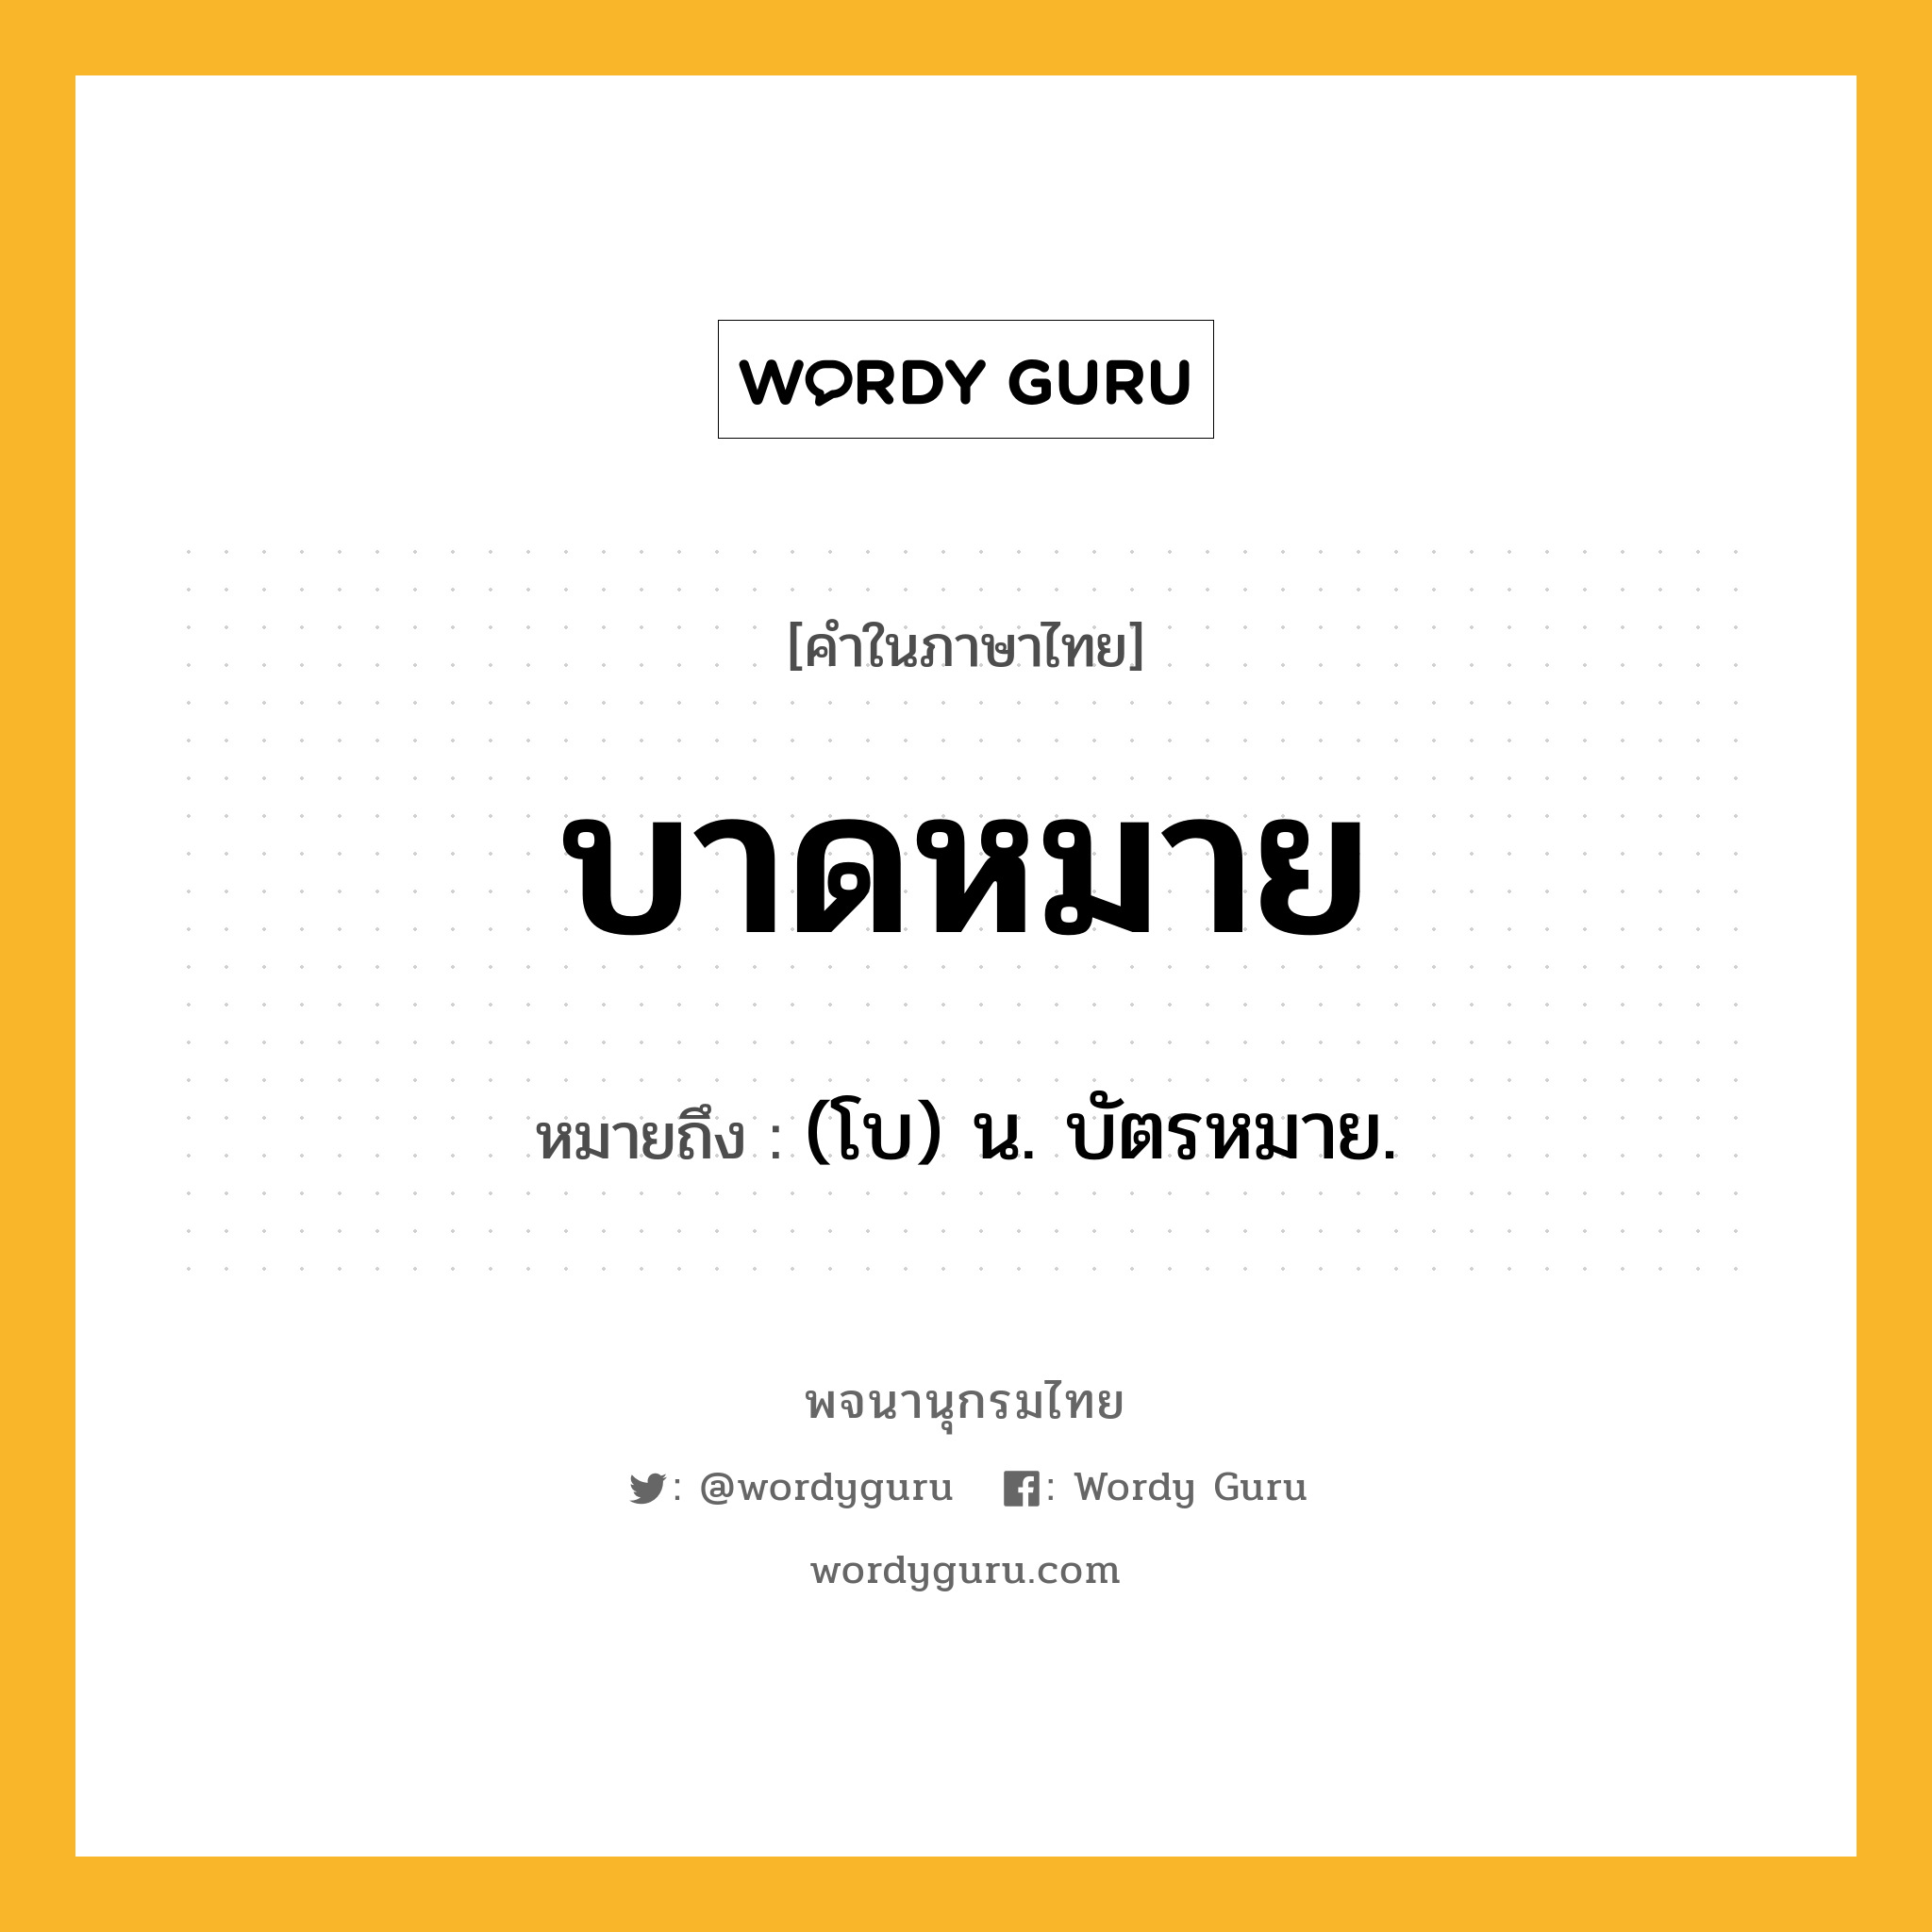 บาดหมาย ความหมาย หมายถึงอะไร?, คำในภาษาไทย บาดหมาย หมายถึง (โบ) น. บัตรหมาย.